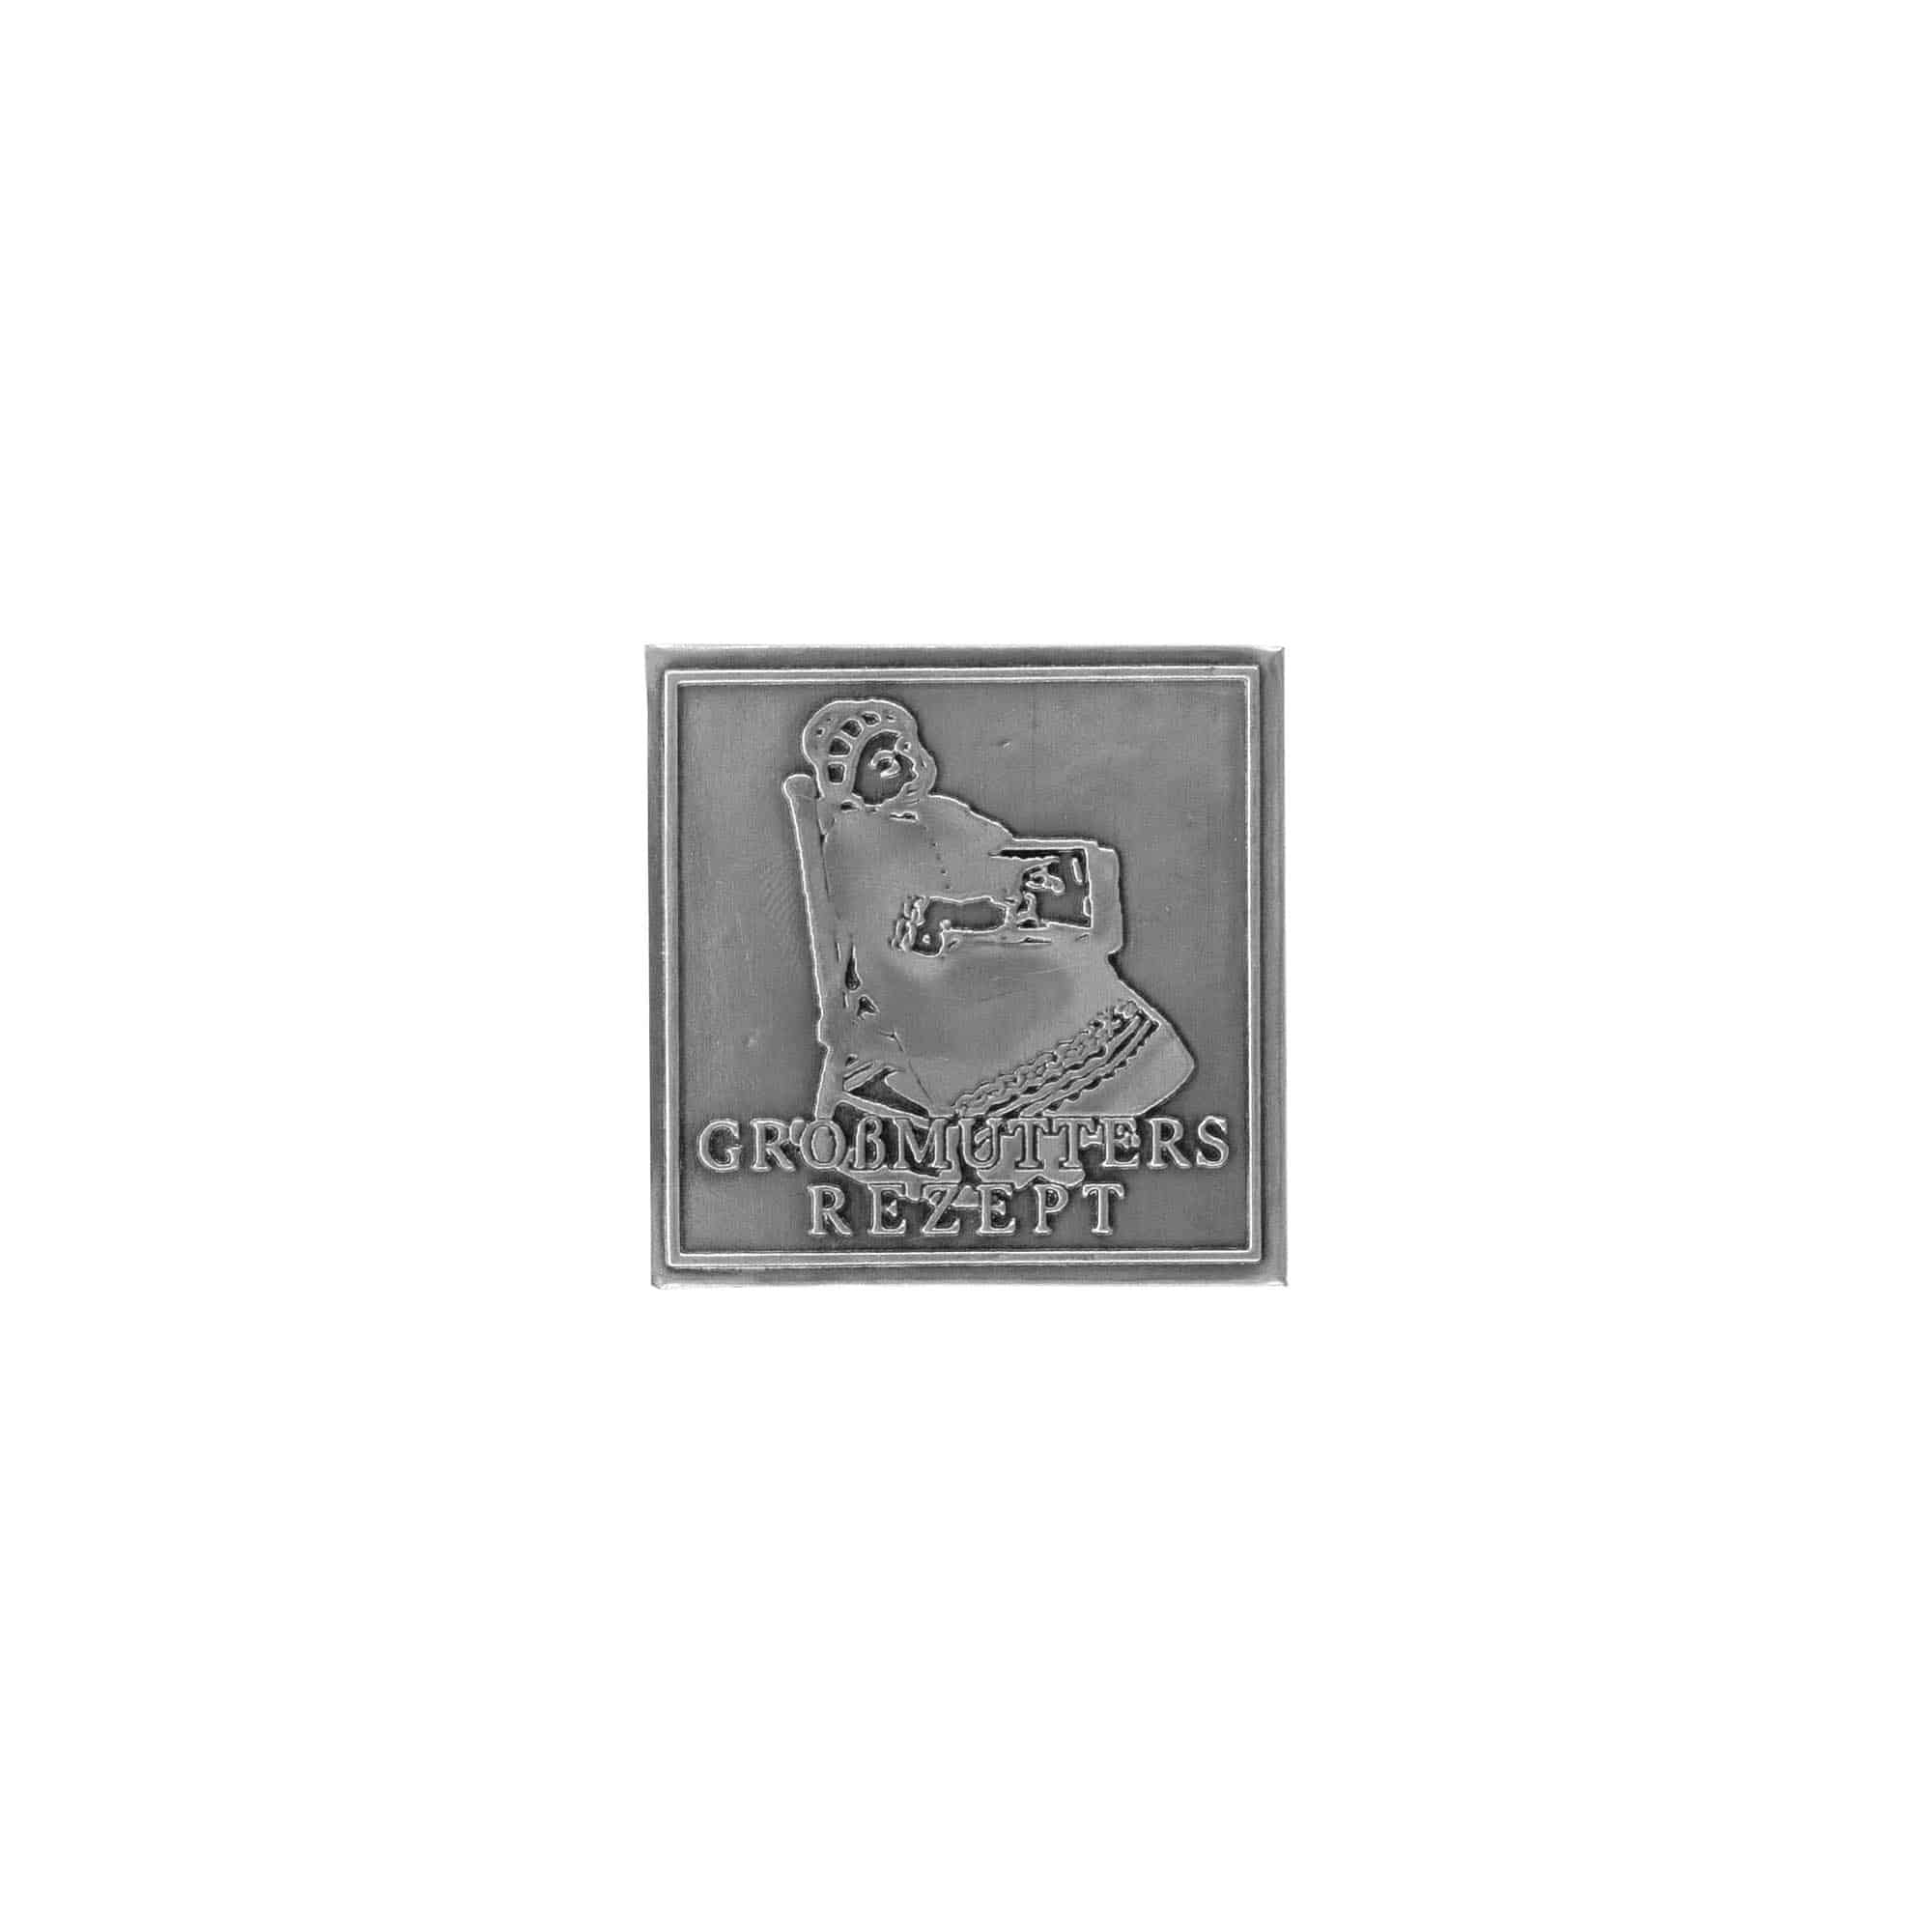 Etykieta cynowa przepis 'Babcia', kwadratowa, metal, kolor srebrny